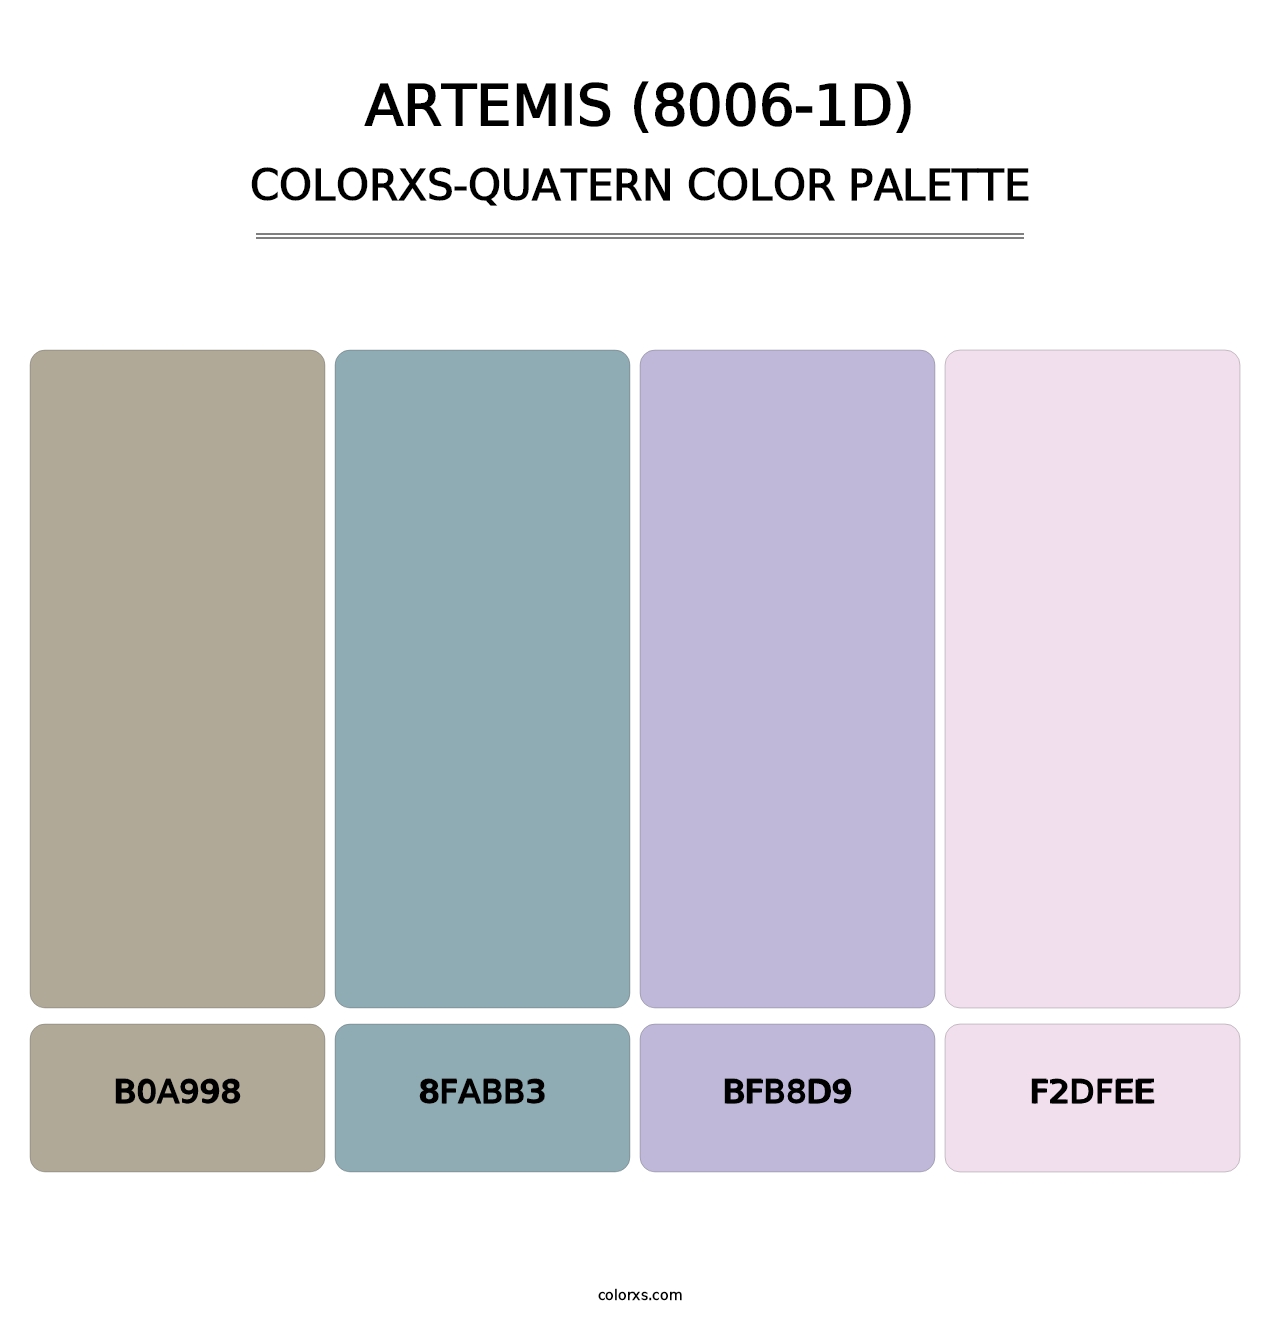 Artemis (8006-1D) - Colorxs Quatern Palette